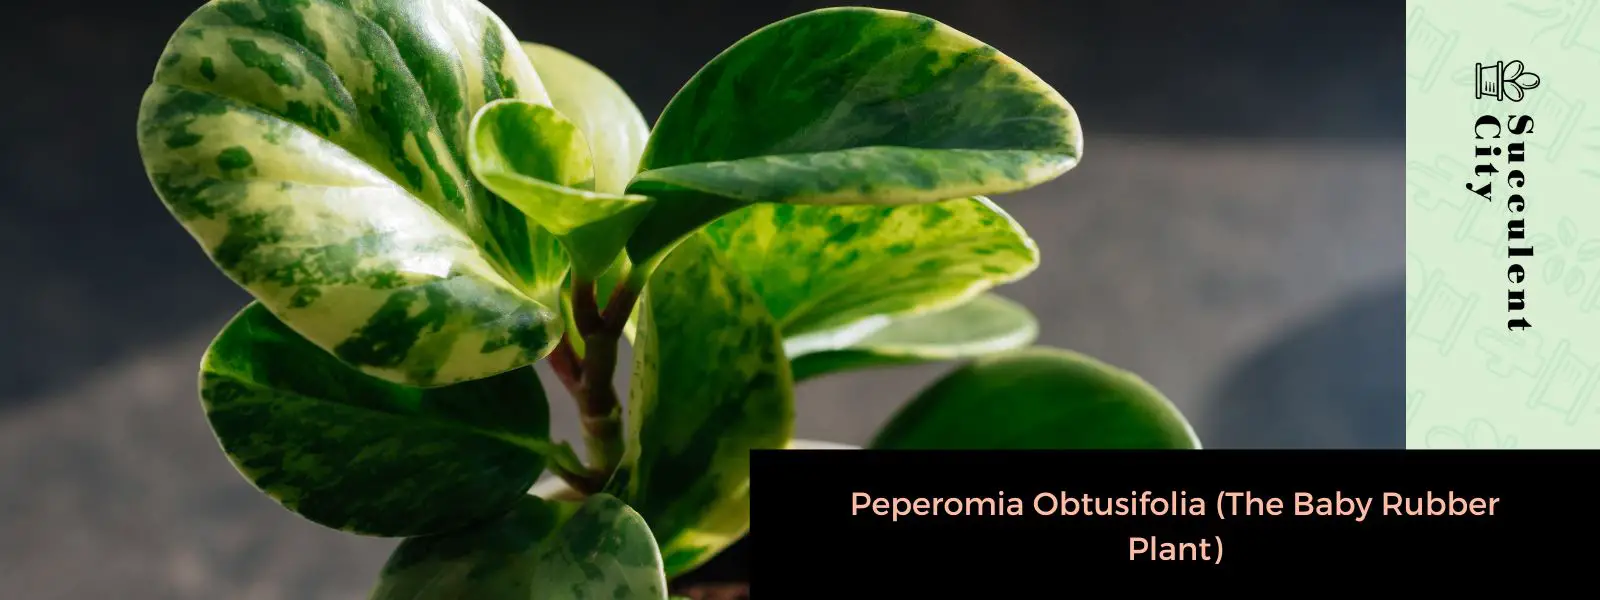 Peperomia Obtusifolia (La Planta Joven del Caucho)